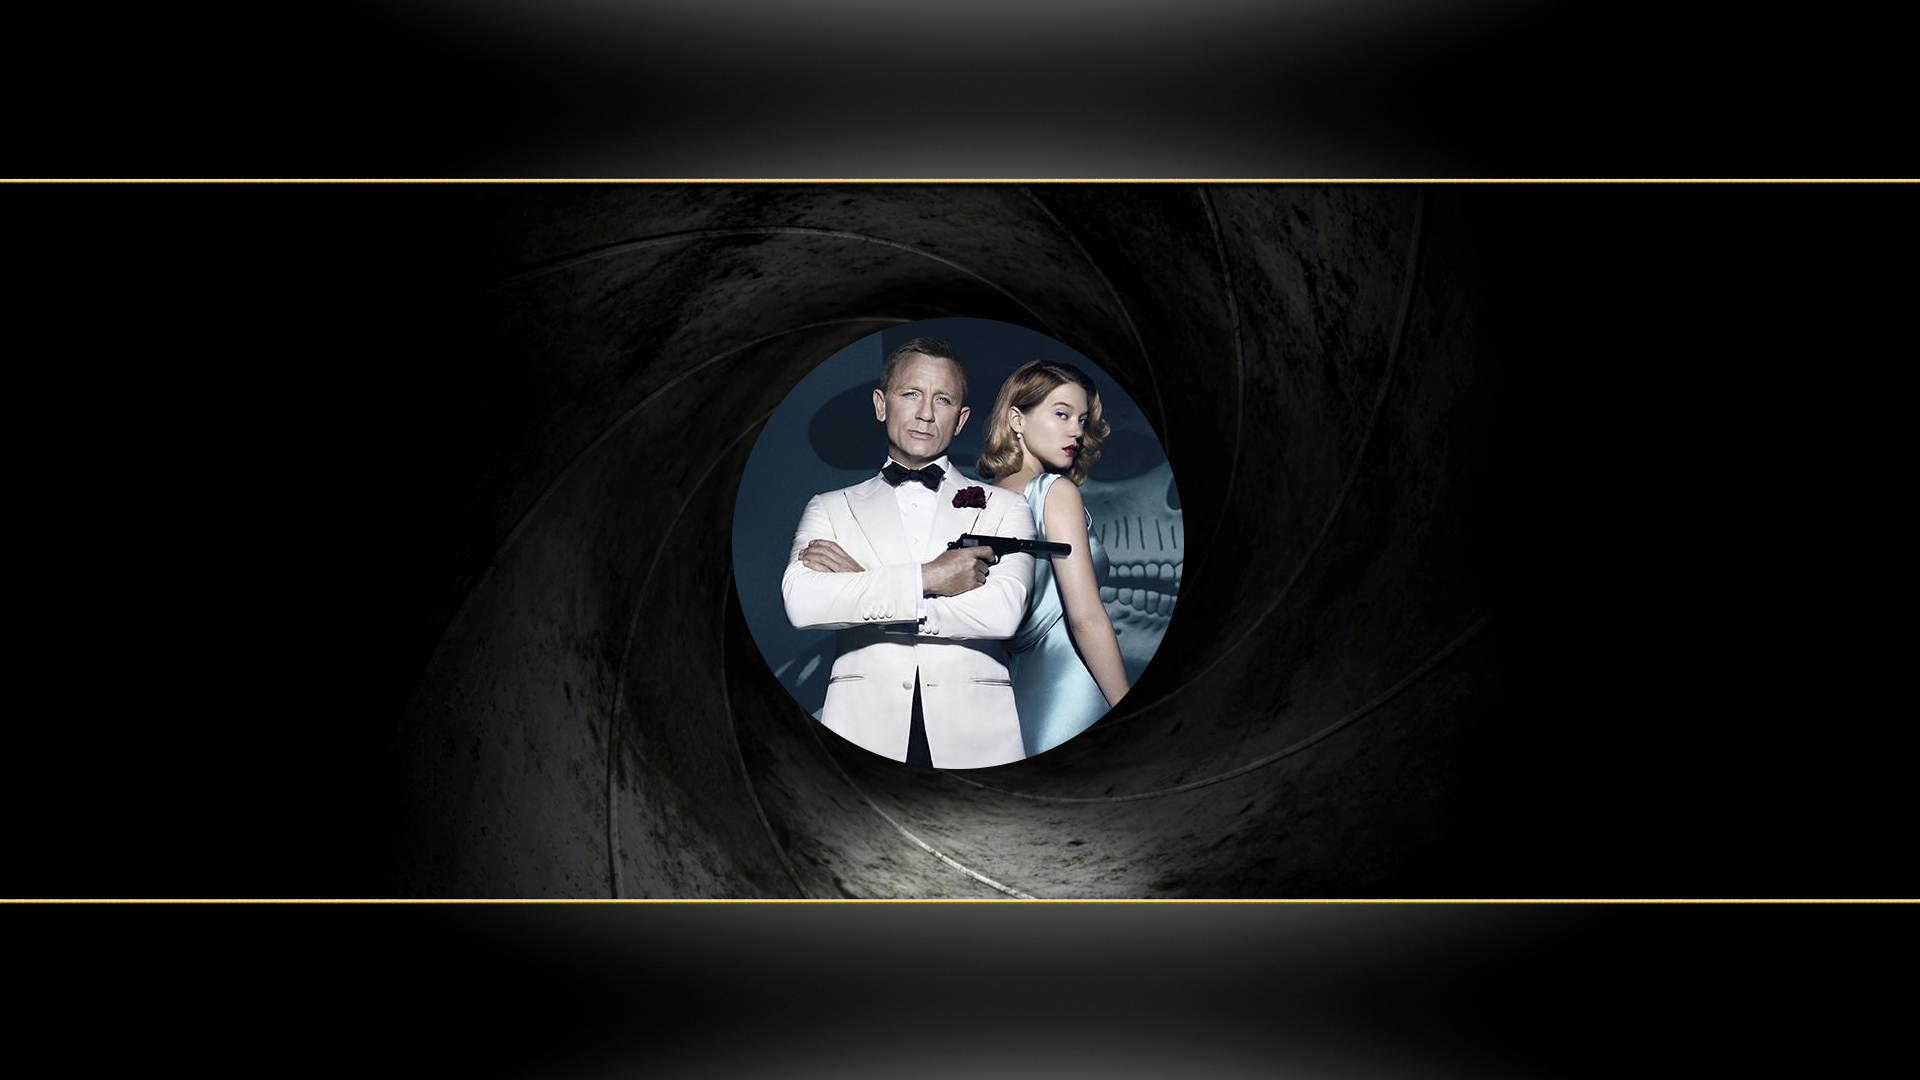 Скачать обои бесплатно Кино, 007: Спектр картинка на рабочий стол ПК